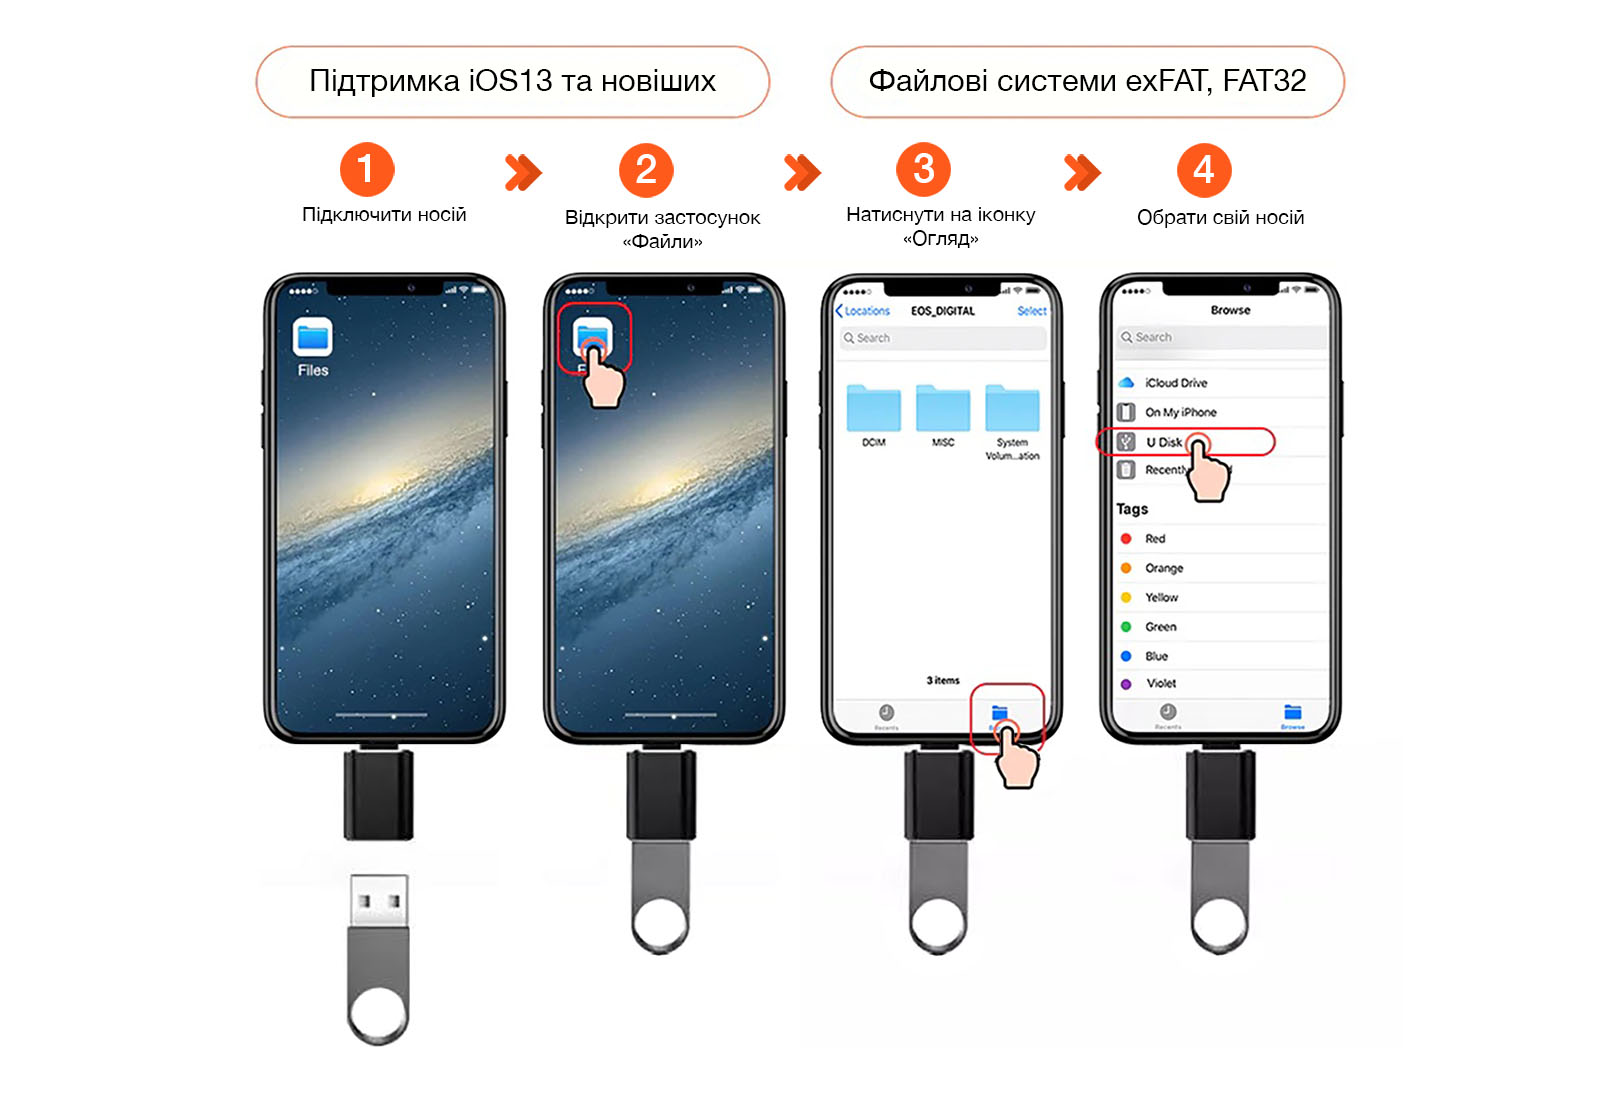 Подключение внешних устройств хранения к iPhone